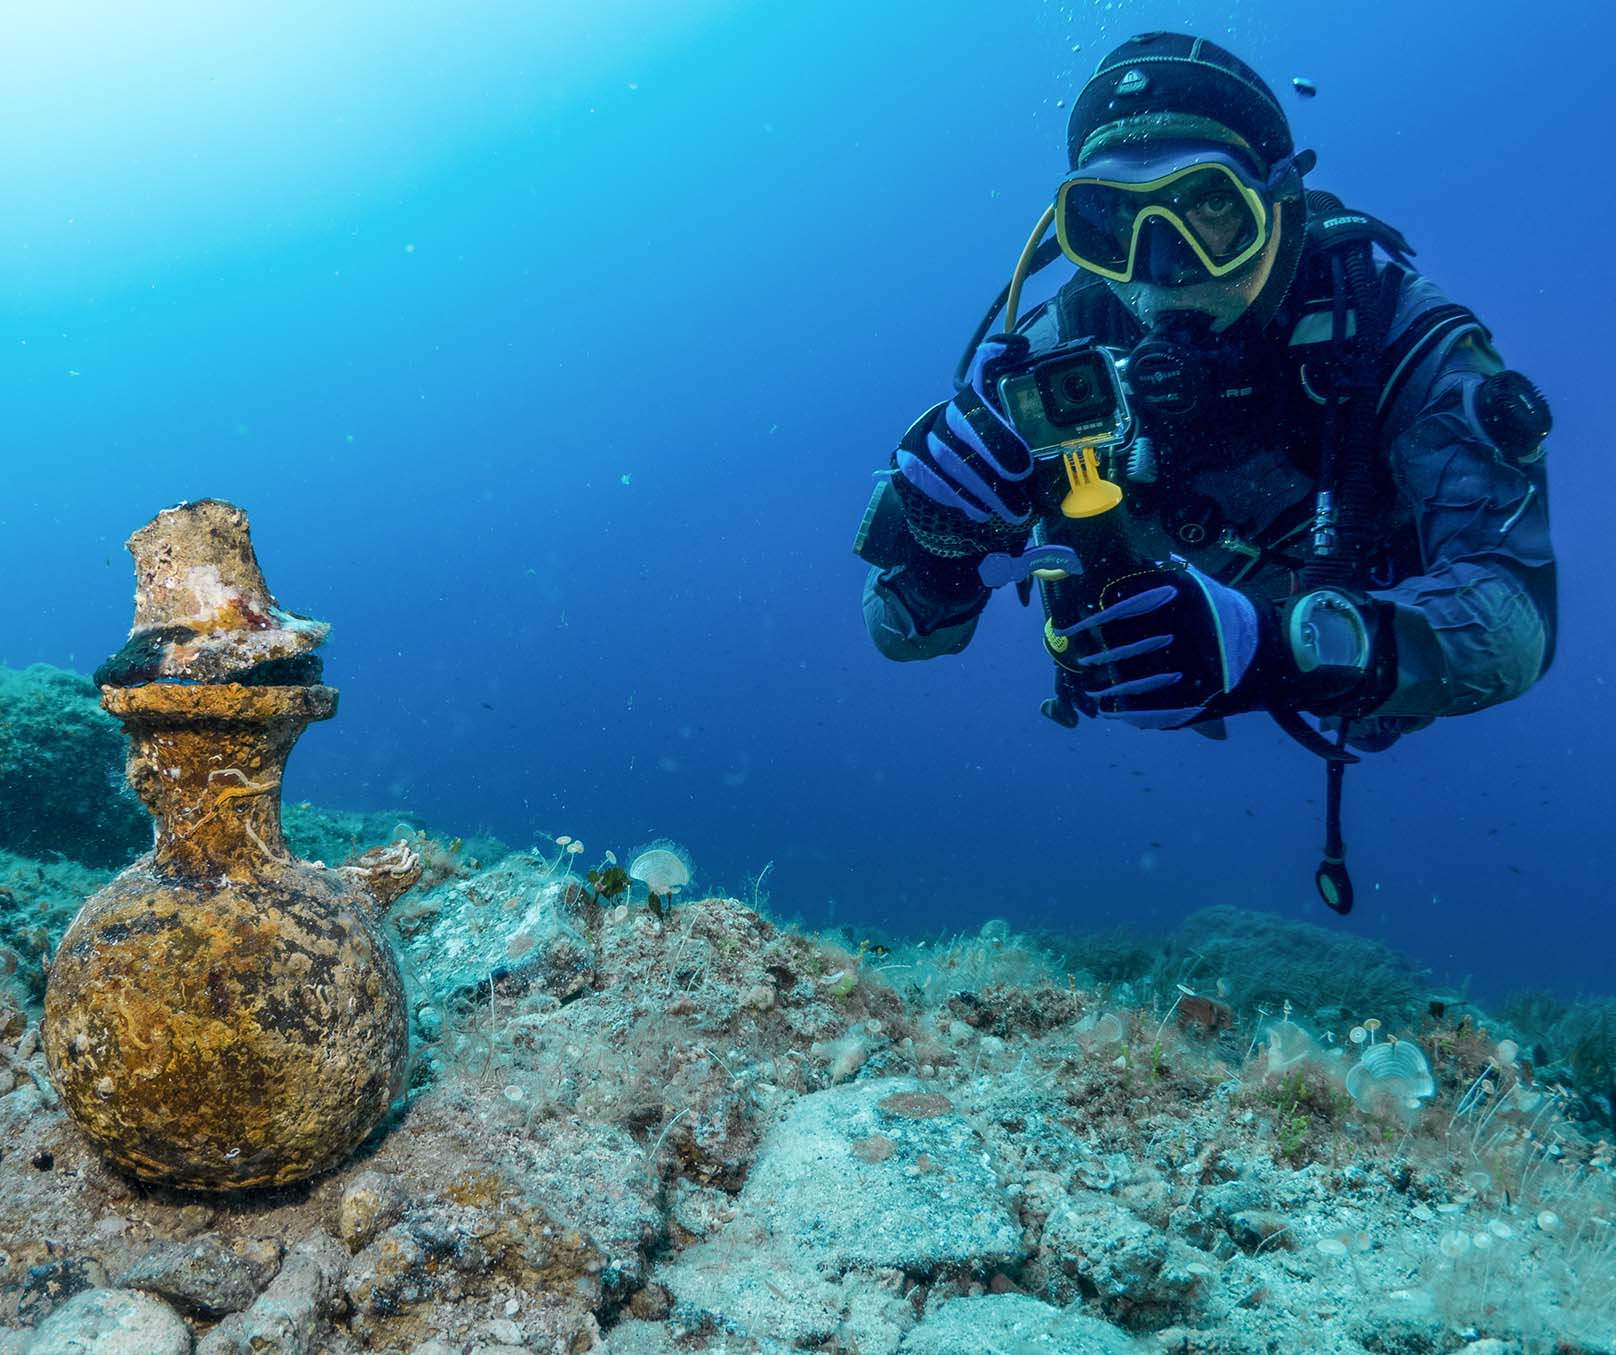 Starożytny rzymski dzbanek znaleziony pod wodą na Wyspie Vis w Chorwacji przez Mariusza Milkę. Antyczny skarb!